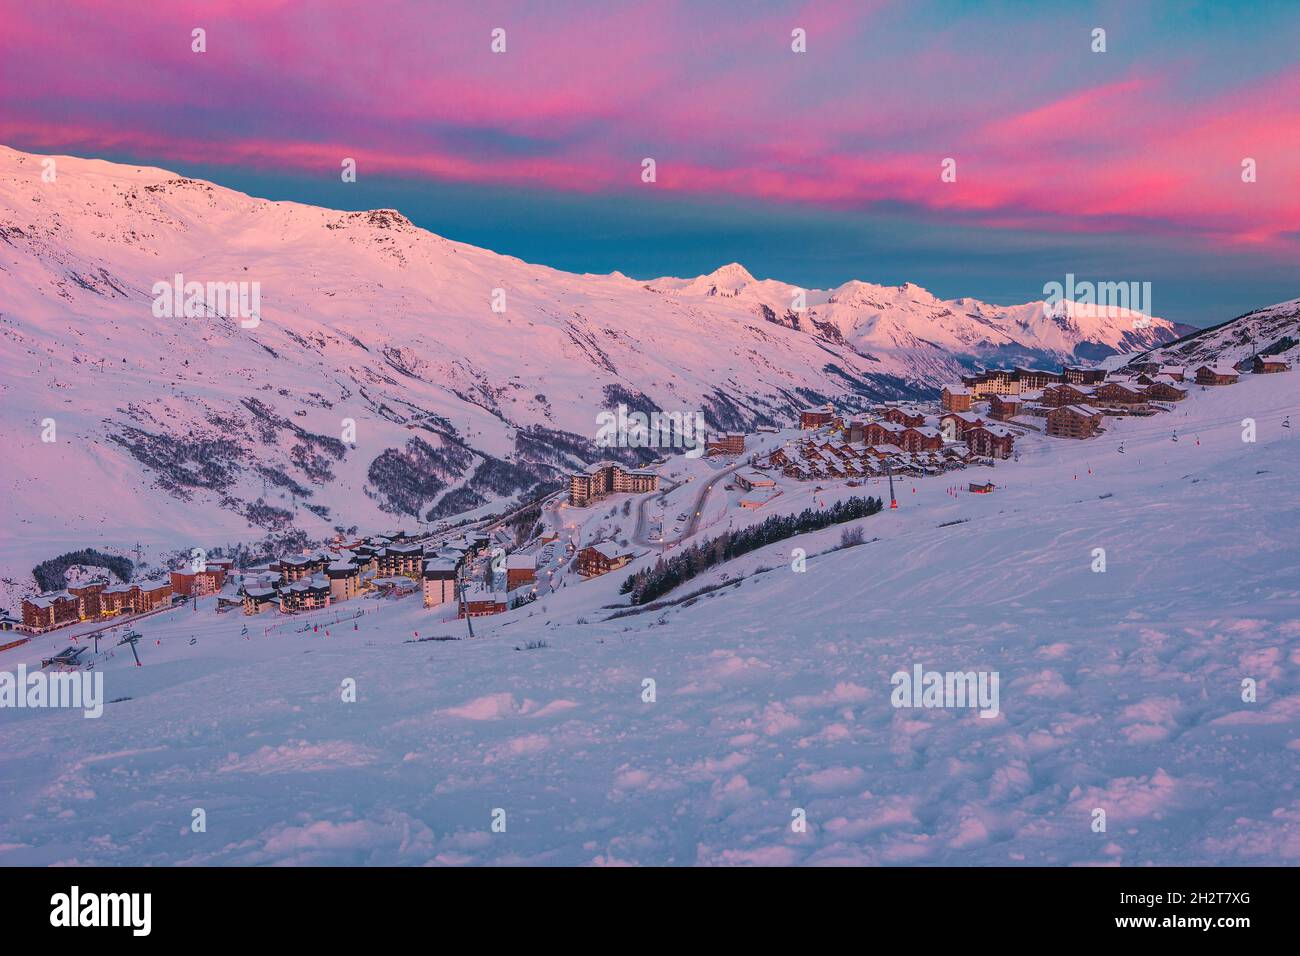 Pintoresco paisaje de invierno al amanecer, impresionante estación de esquí con casas típicas alpinas de madera en las pistas de los Alpes franceses, Les Menuires, 3 Vallees, Franc Foto de stock